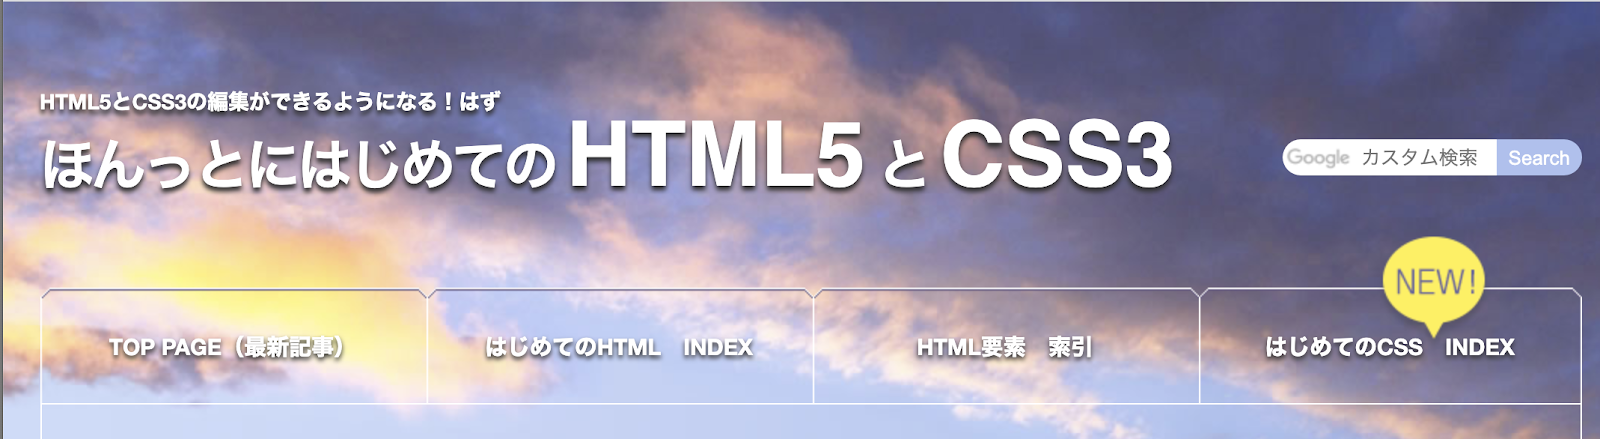 ほんとにはじめてのHTML5とCSS3 